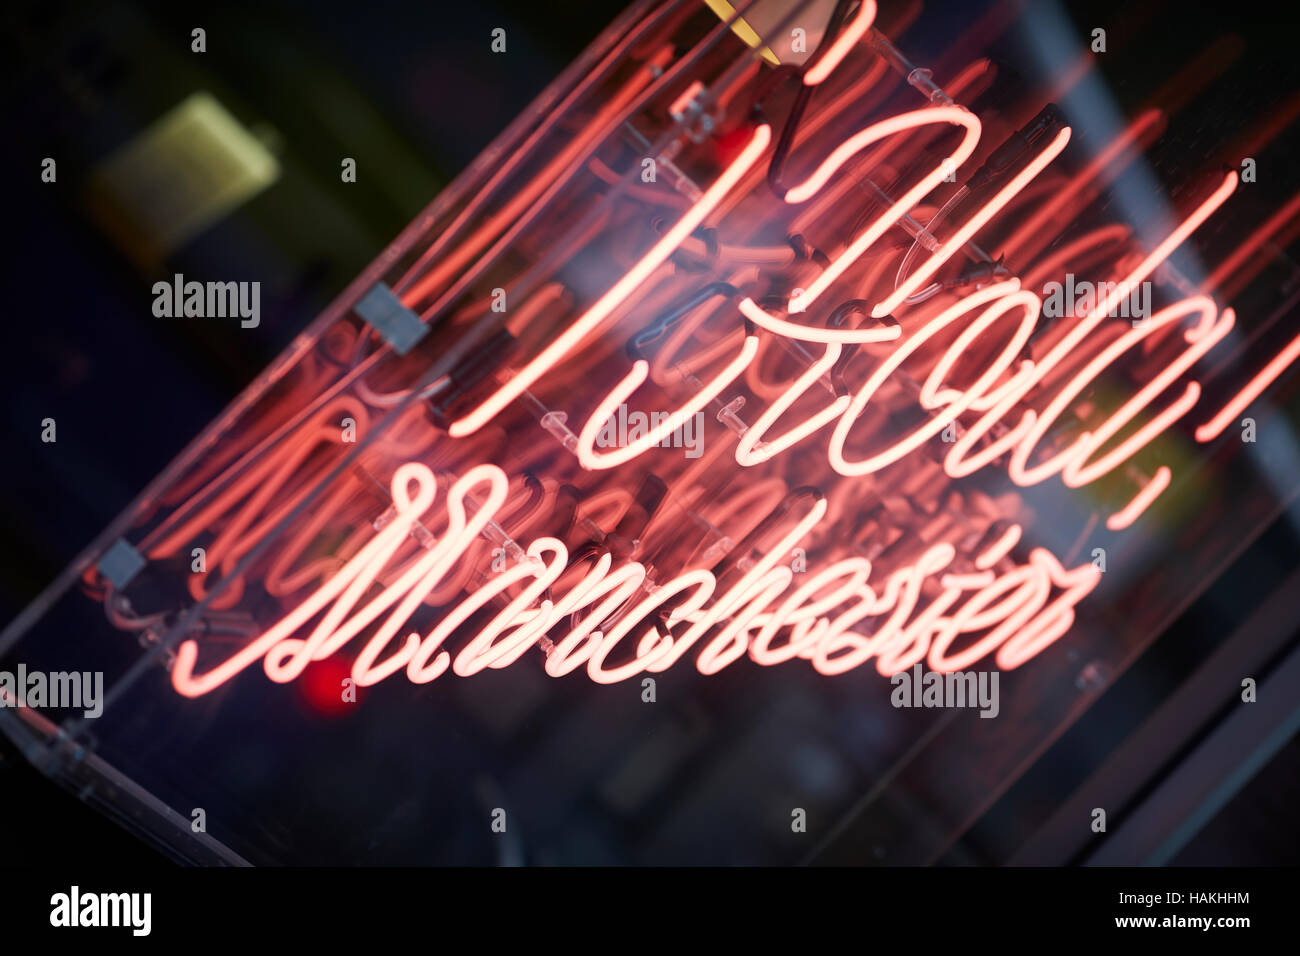 Hola Manchester Leuchtreklame Schaufenster Barburrito Mexikanisch Essen zum Mitnehmen Beschilderung Rotlicht Ufer Lebensmittelgeschäft angezeigt Fette Stockfoto